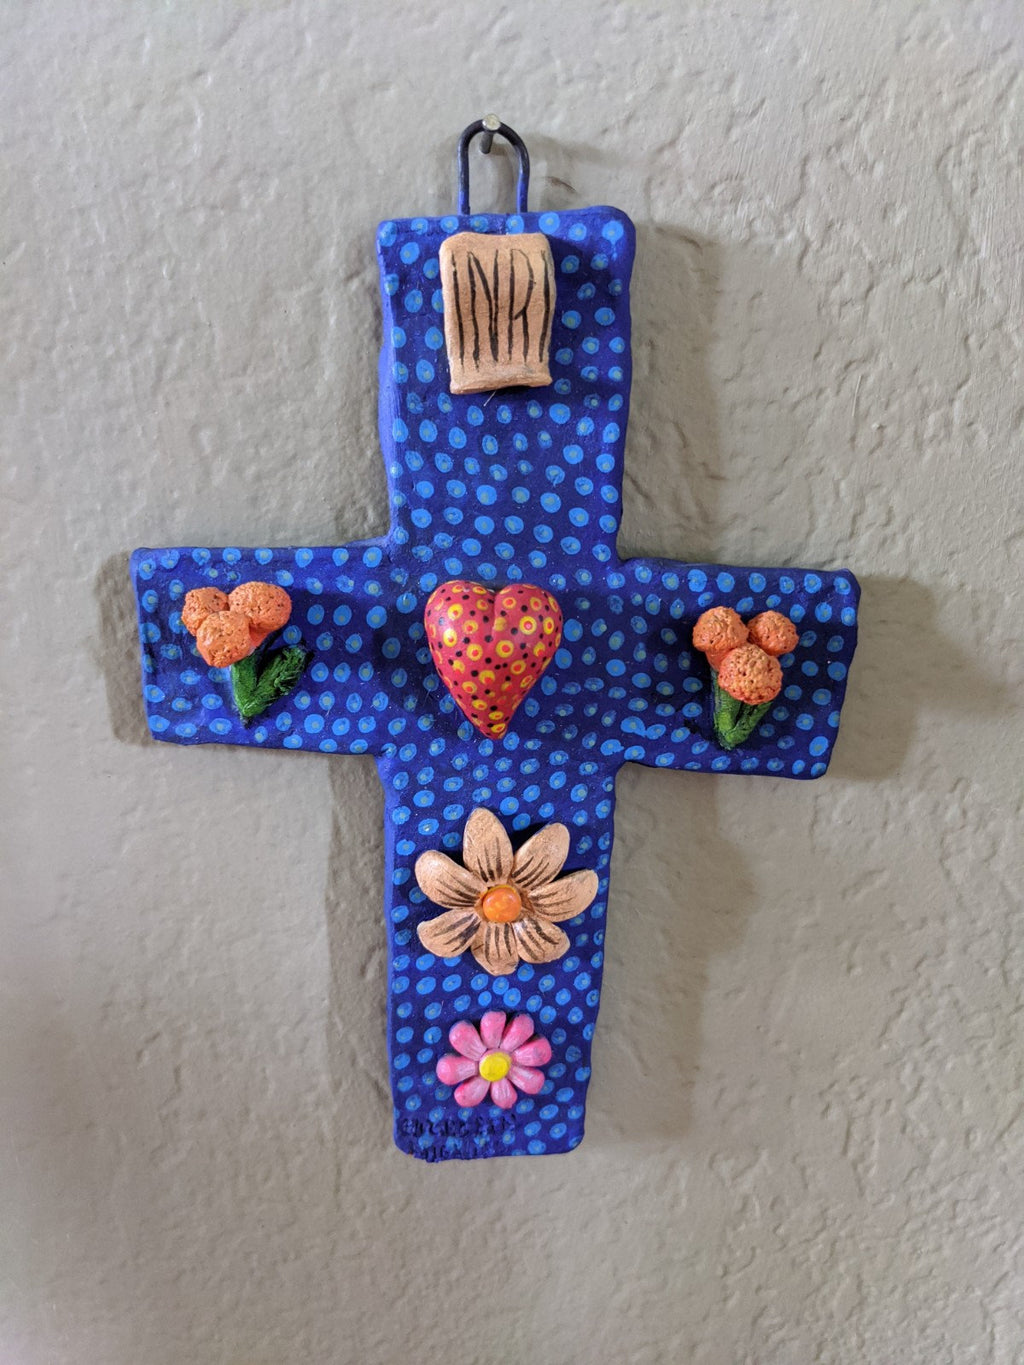 Handmade Cross, Cross Wall Decor, Cross Wall Art, Large Cross Decor, Cross Decorations, Religious Cross, Blue Heart